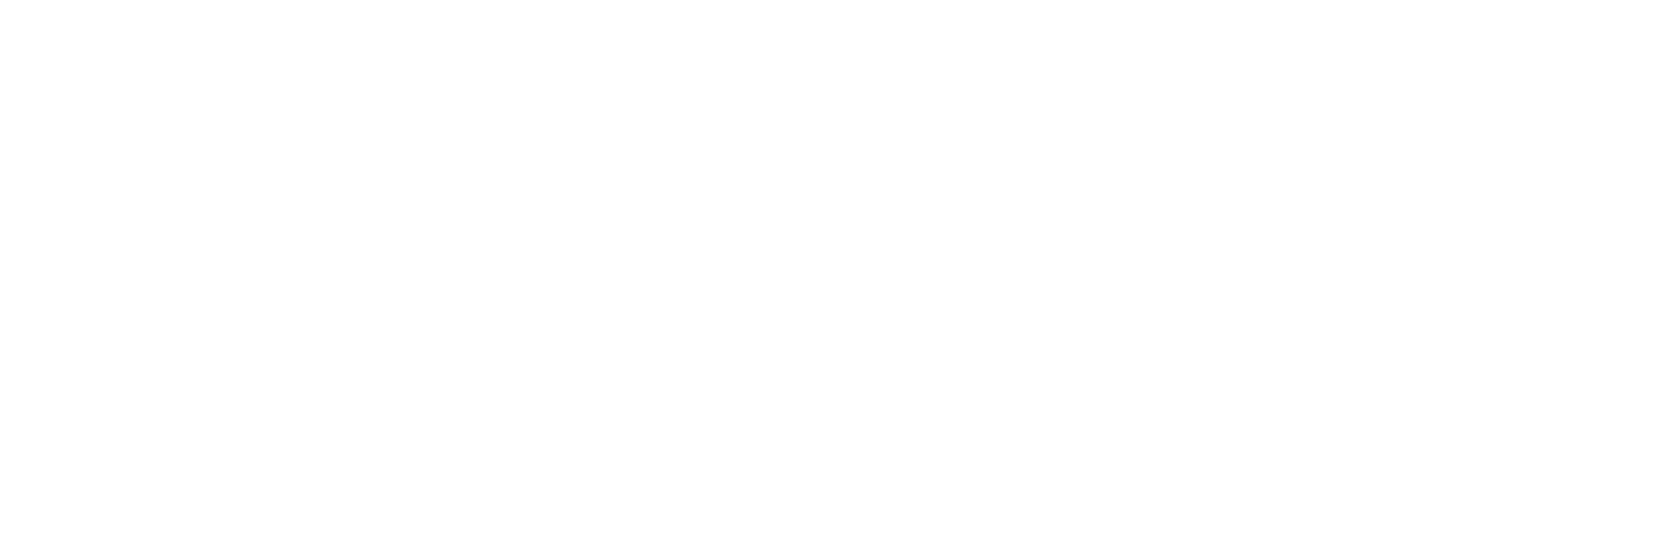 Профиль алюминиевый ОТБОЙНИК для натяжных потолков: размер, вид, применение, способ монтажа в Москве, СПБ и России